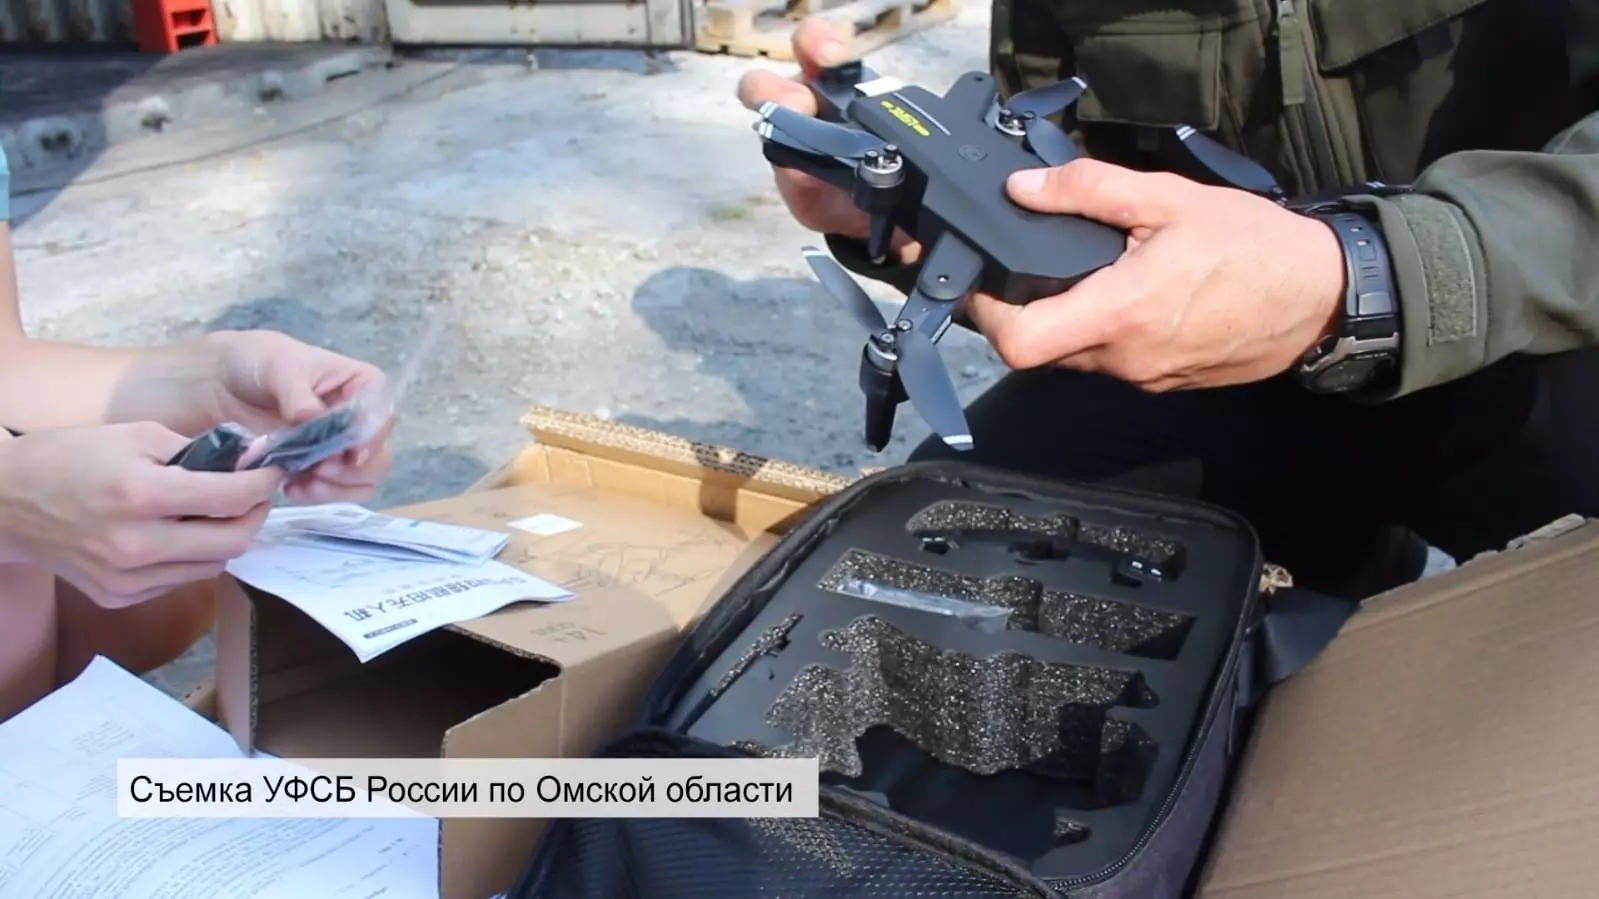 Появилось видео с задержанием партии беспилотников на границе Омской области